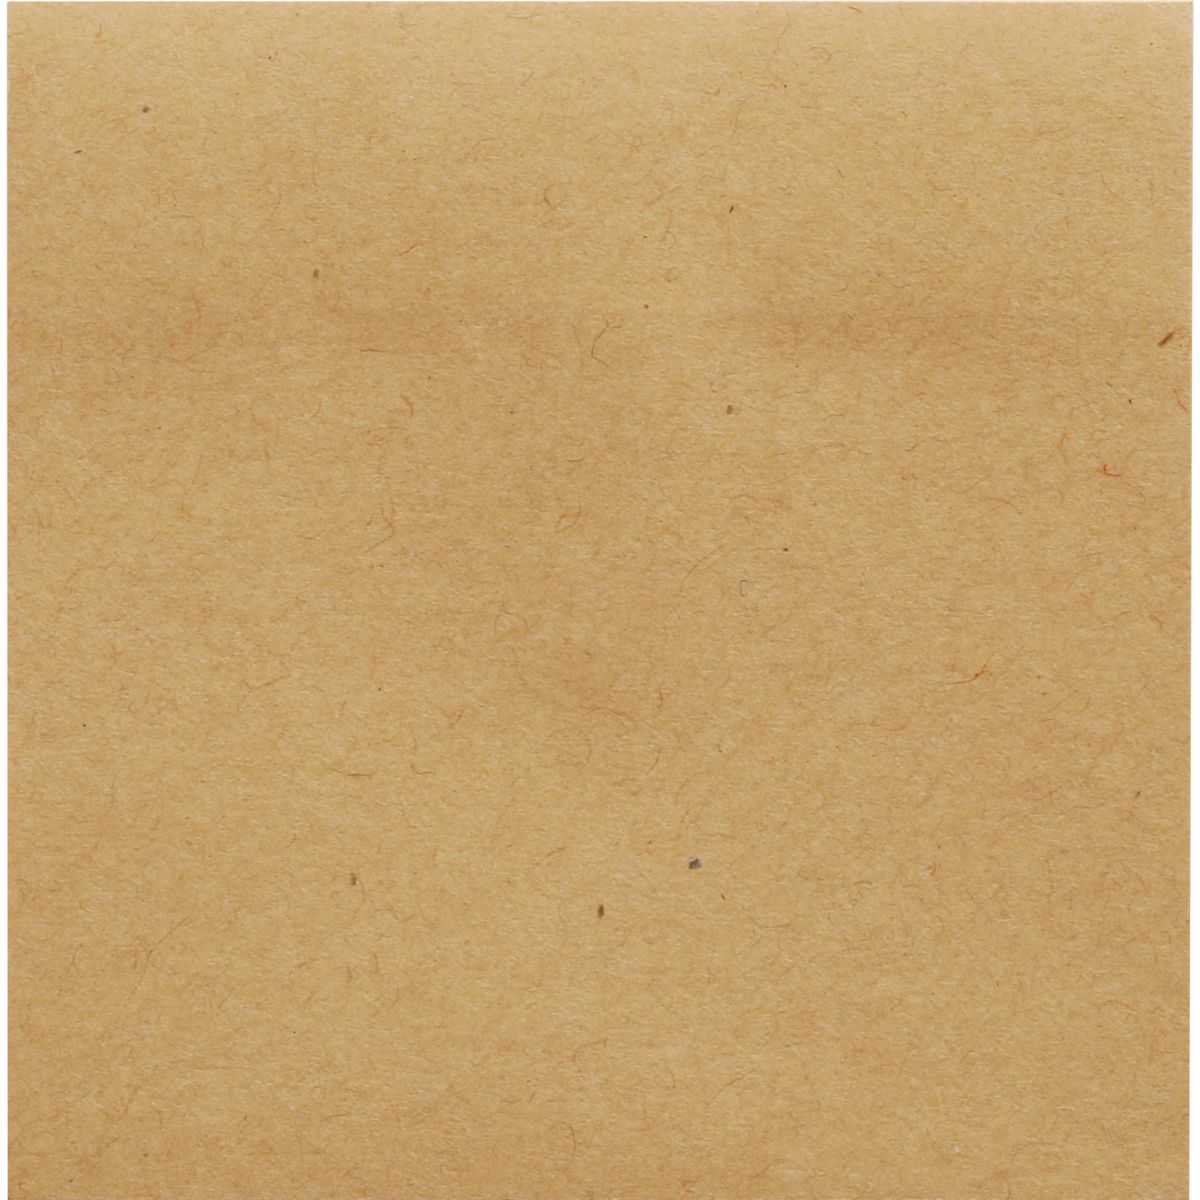 Kostka papierowa brązowa jasna [mm:] 76x76 M&G (MG AS33P102)